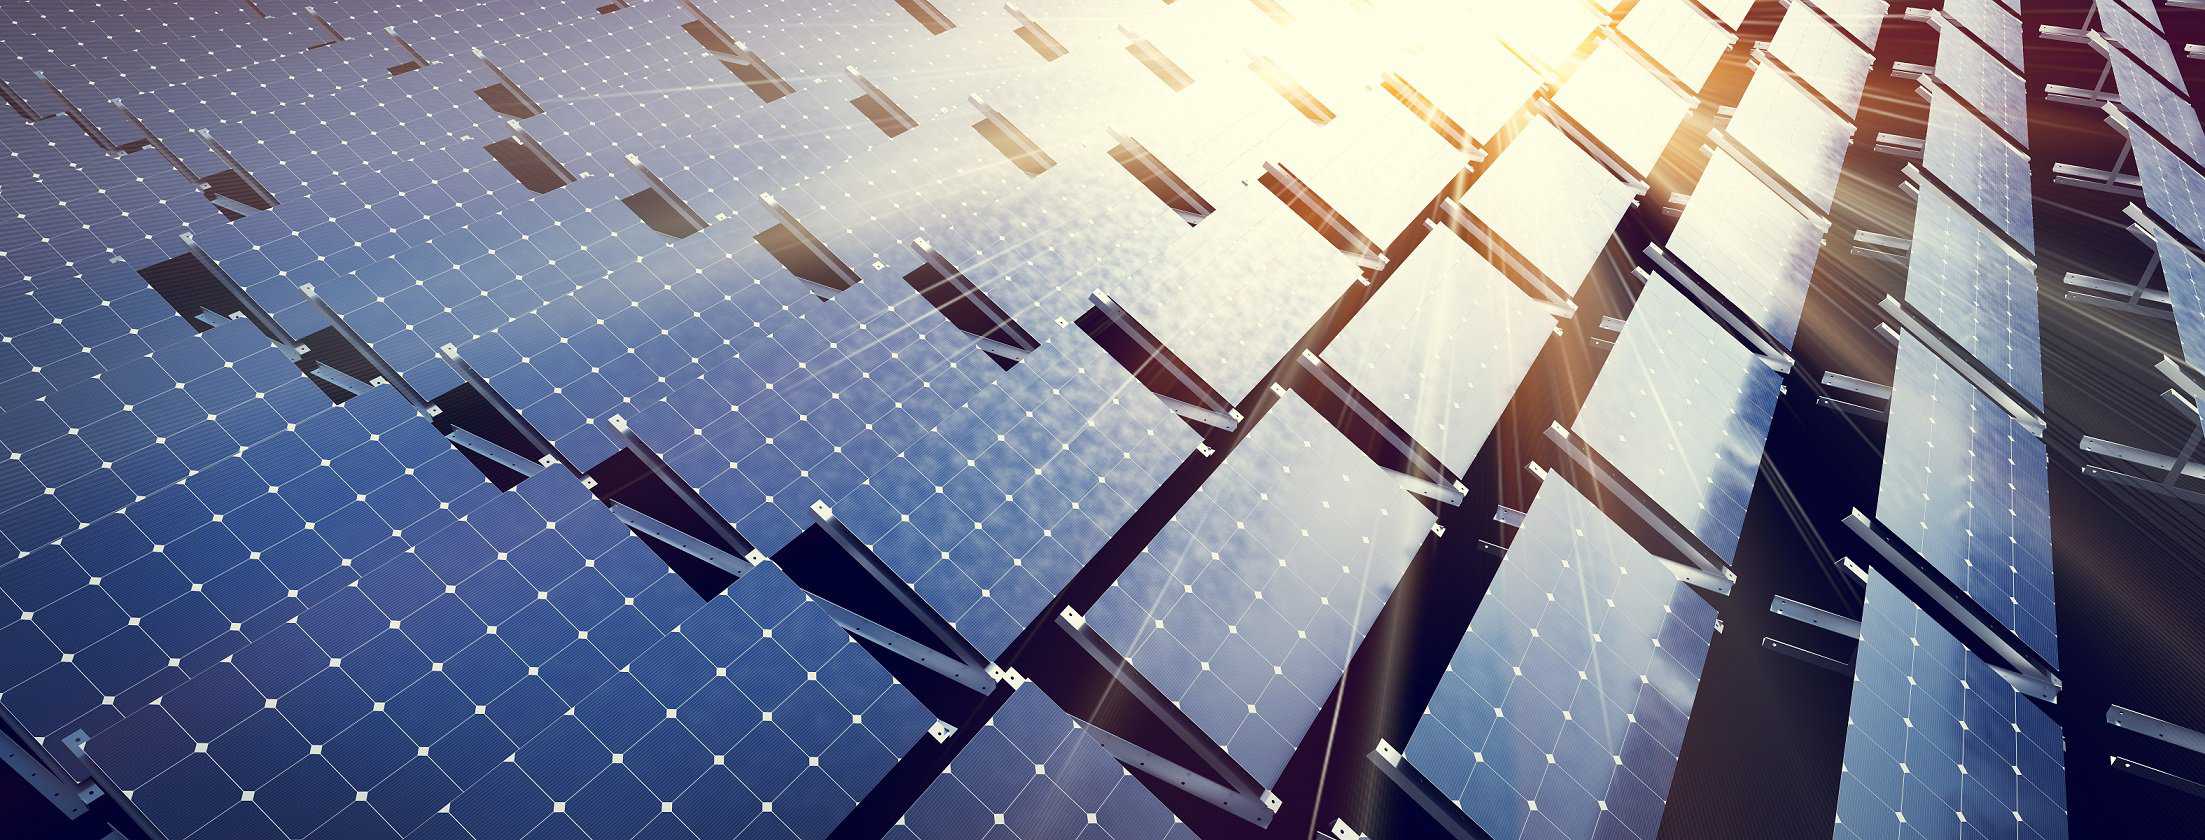 Photovoltaik Anlagen Investment München